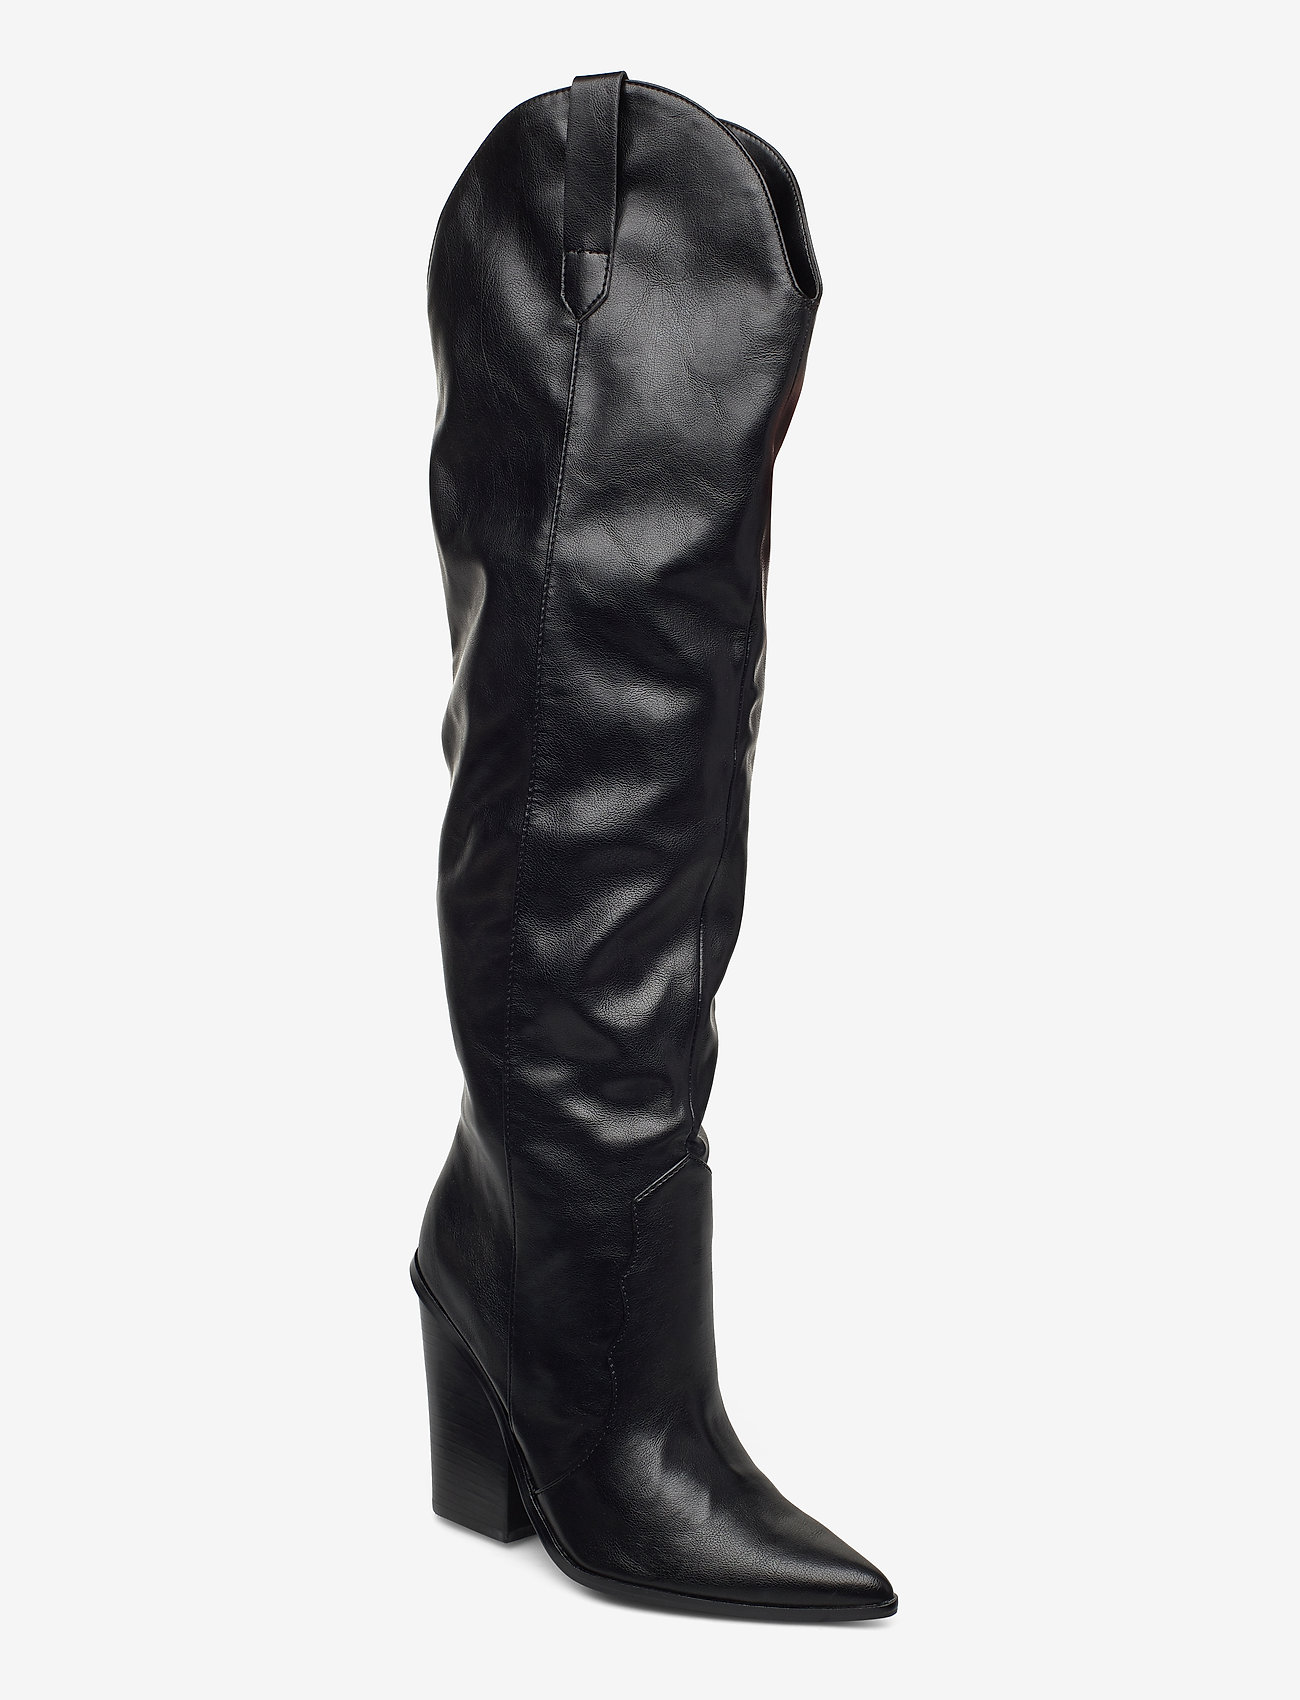 Women's Steve Madden Ranger Knee High Boot Black Synthetic